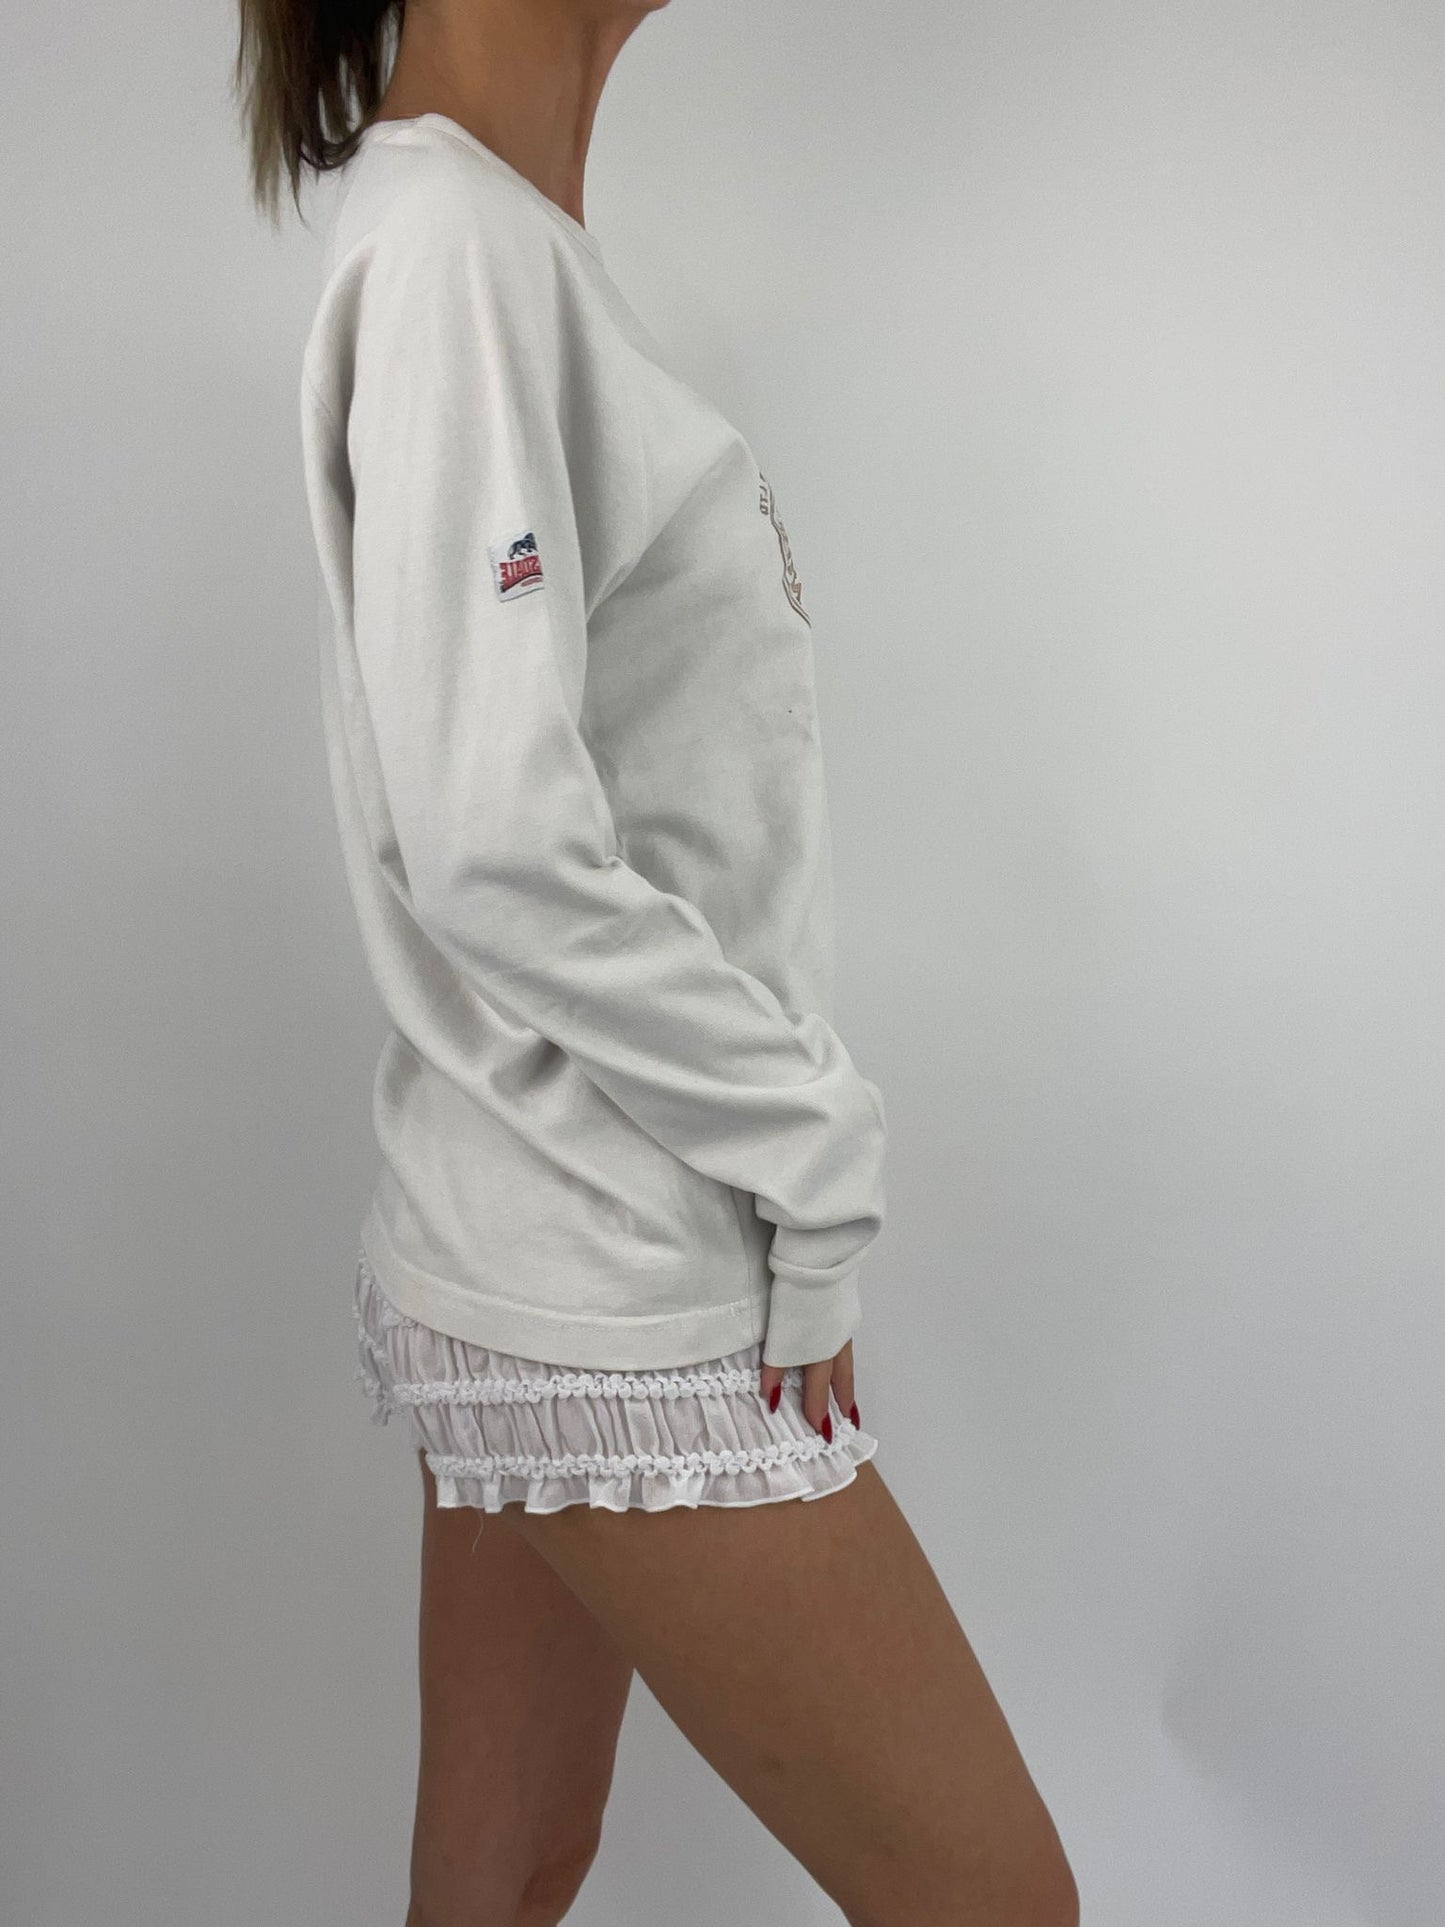 EUROS DROP | medium white lonsdale sweatshirt with logo detail